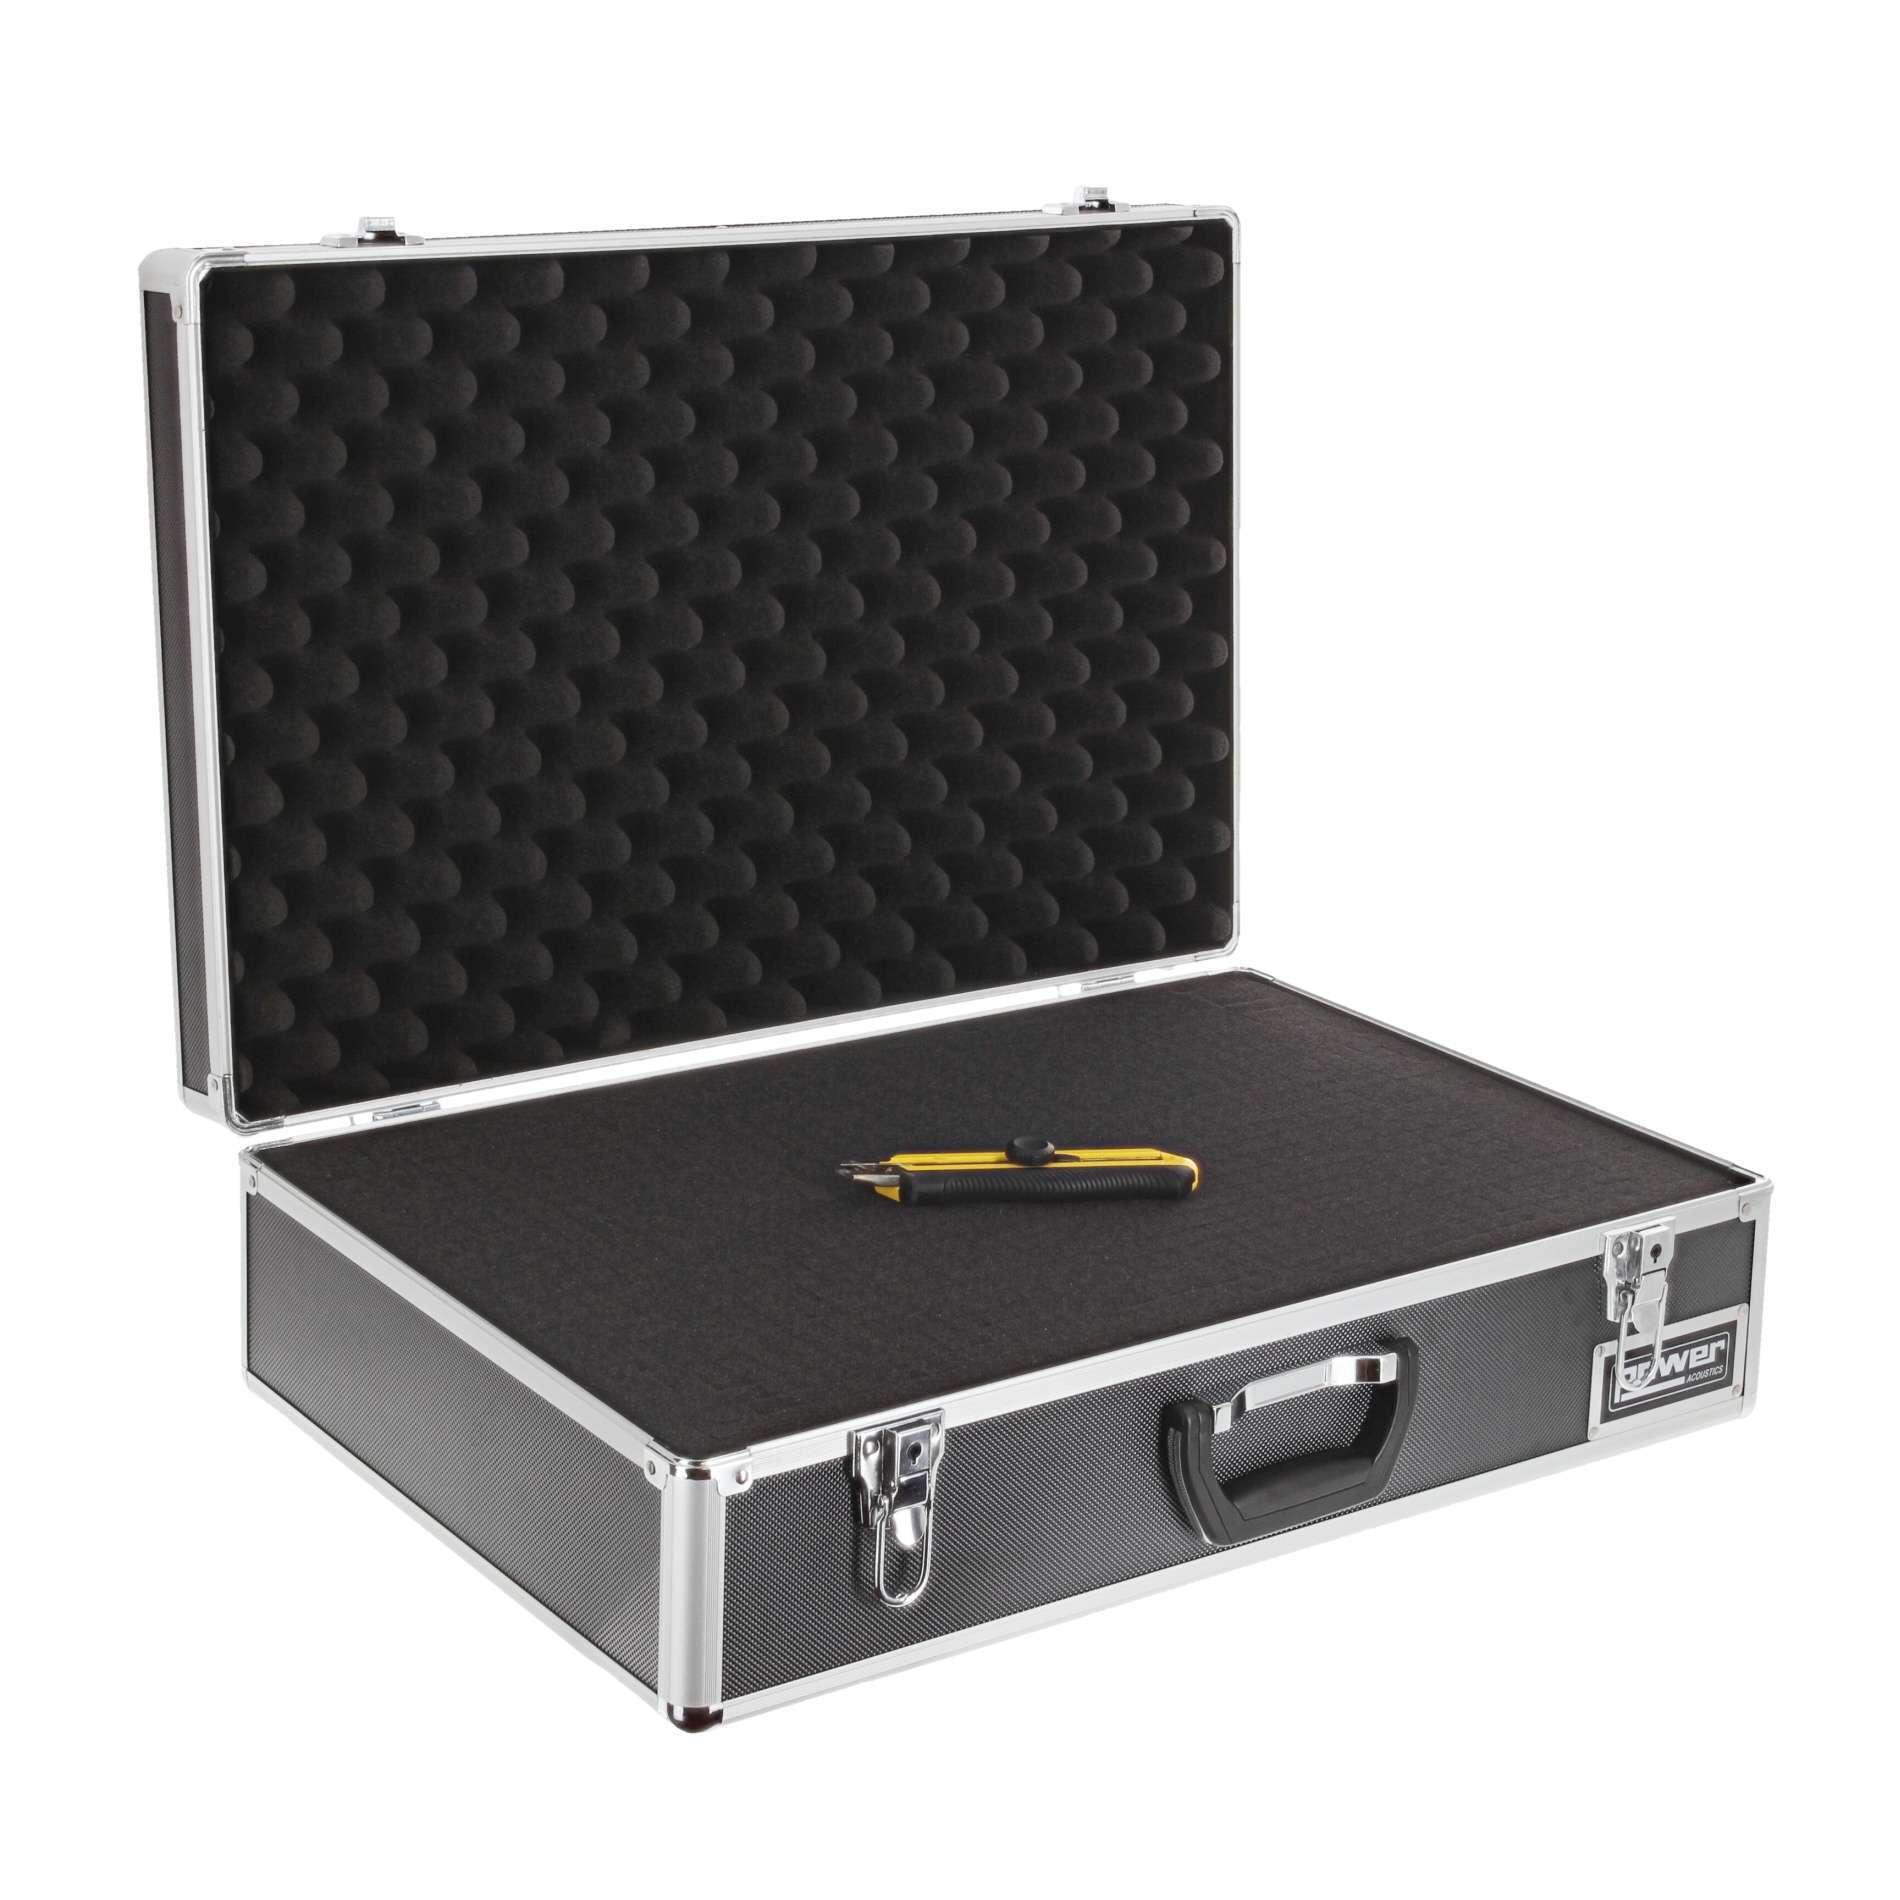 Power Acoustics Fl Mixer 4 Valise De Transport Pour Mixeur - Cases for mixing desk - Variation 1